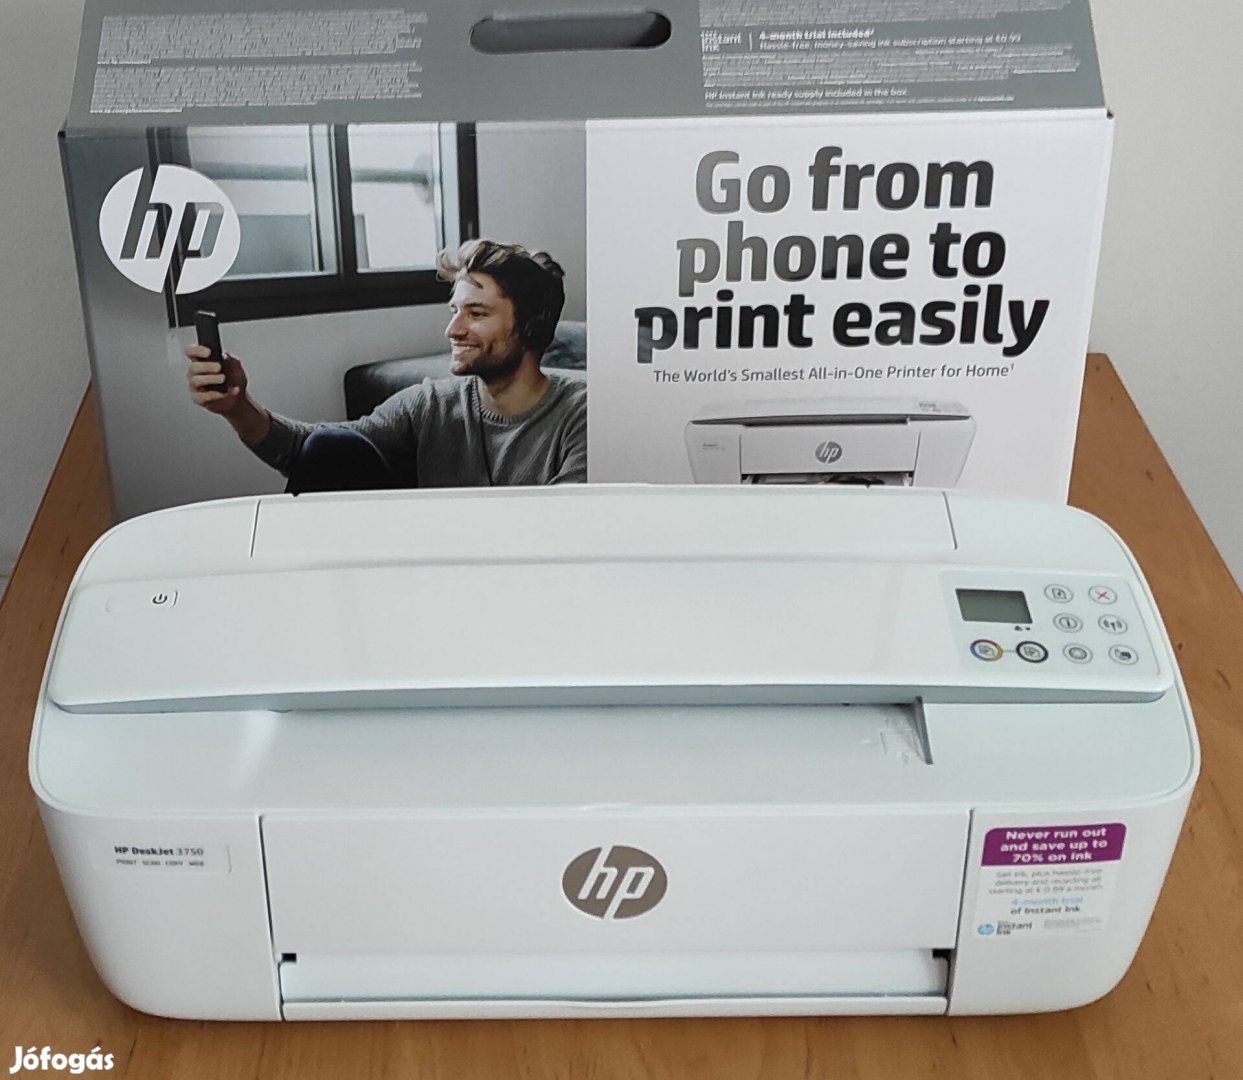 Eladó HP Deskjet 3750 színes multifunkciós tintasugaras nyomtató